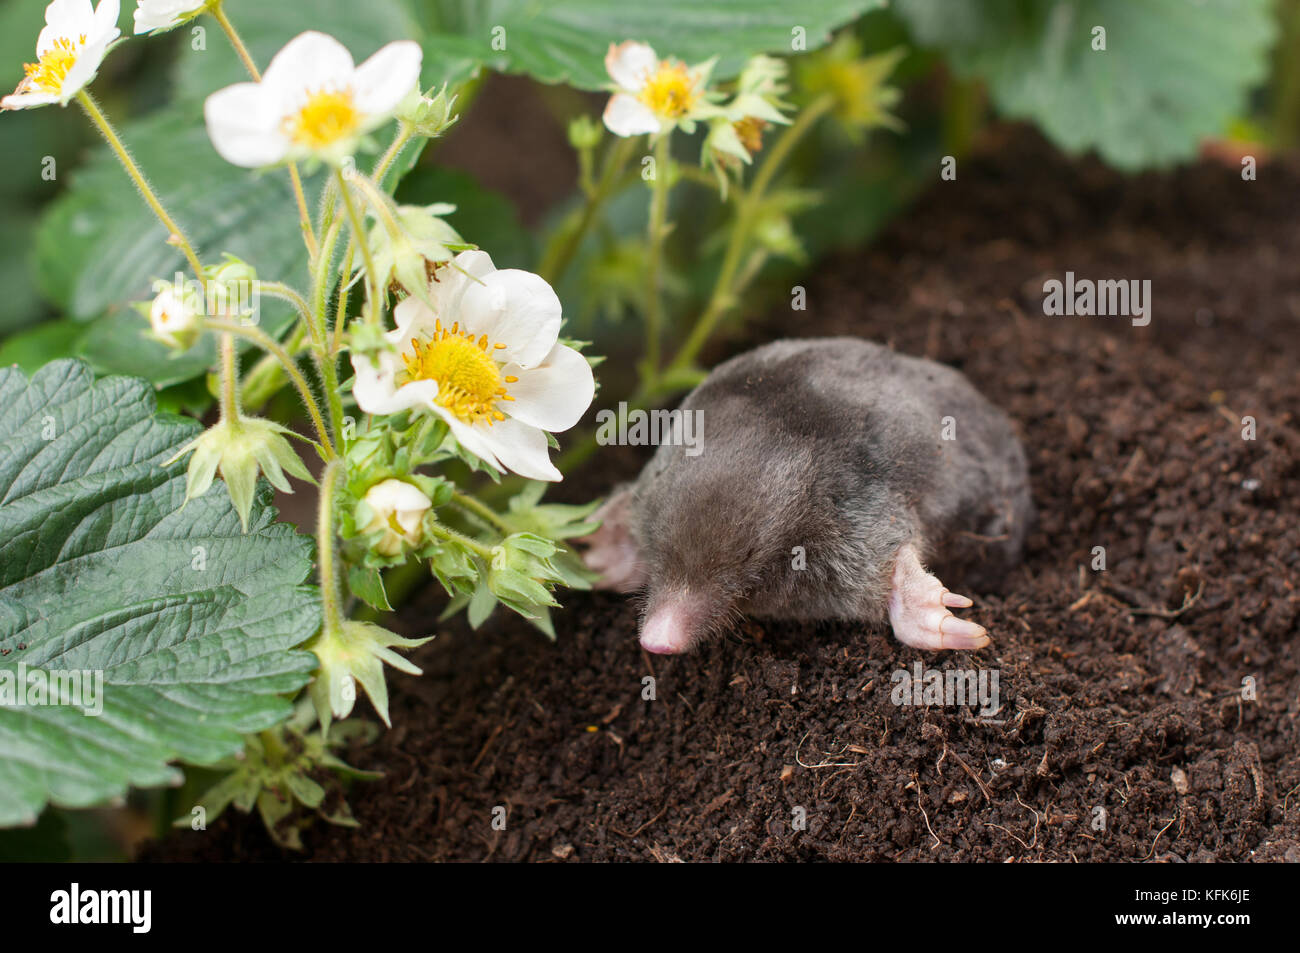 Mole hors du trou- in vegetable garden Banque D'Images